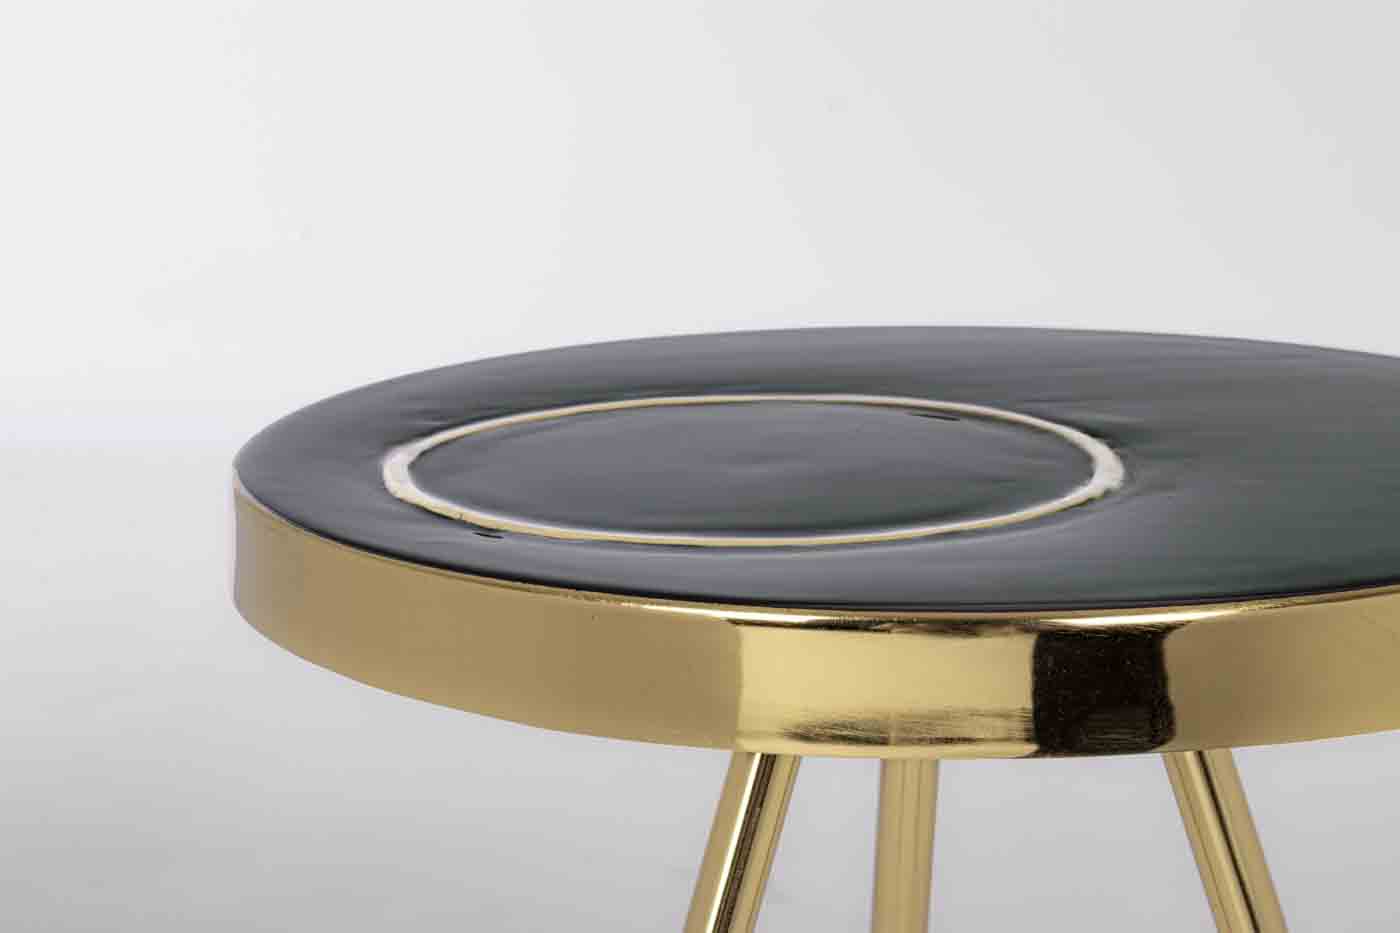 Beistelltisch Kesar in einem modernen Design. Gefertigt aus Metall in einem schwarzen Farbton. Marke Bizotto.